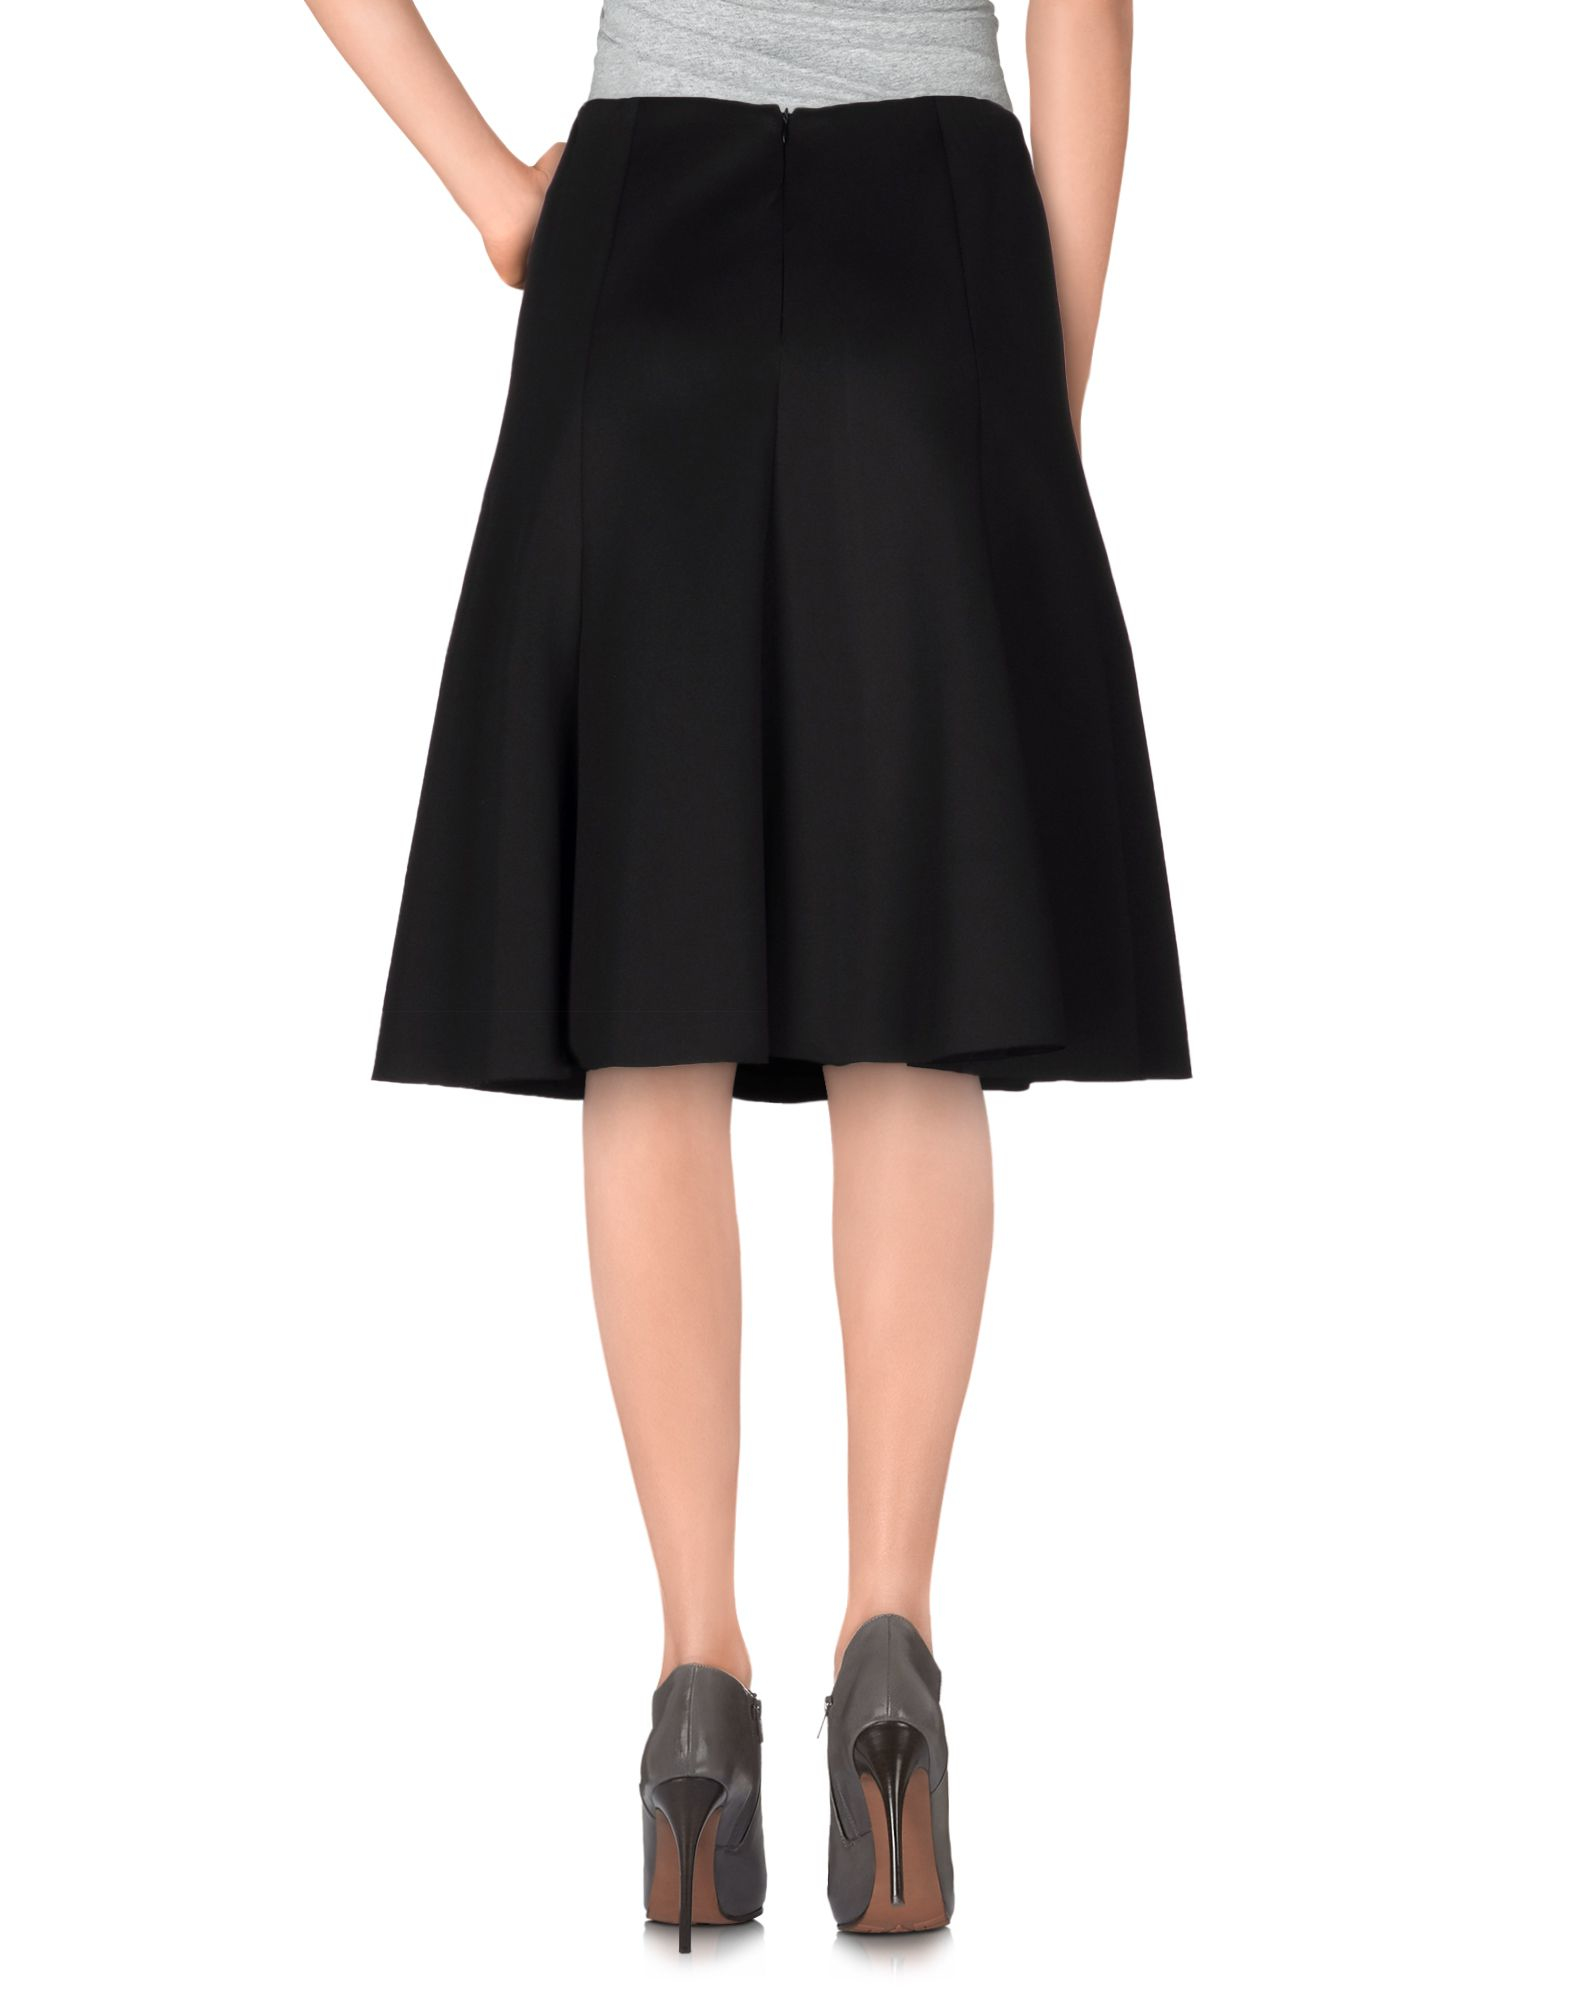 Lyst - Line & Dot Knee Length Skirt in Black